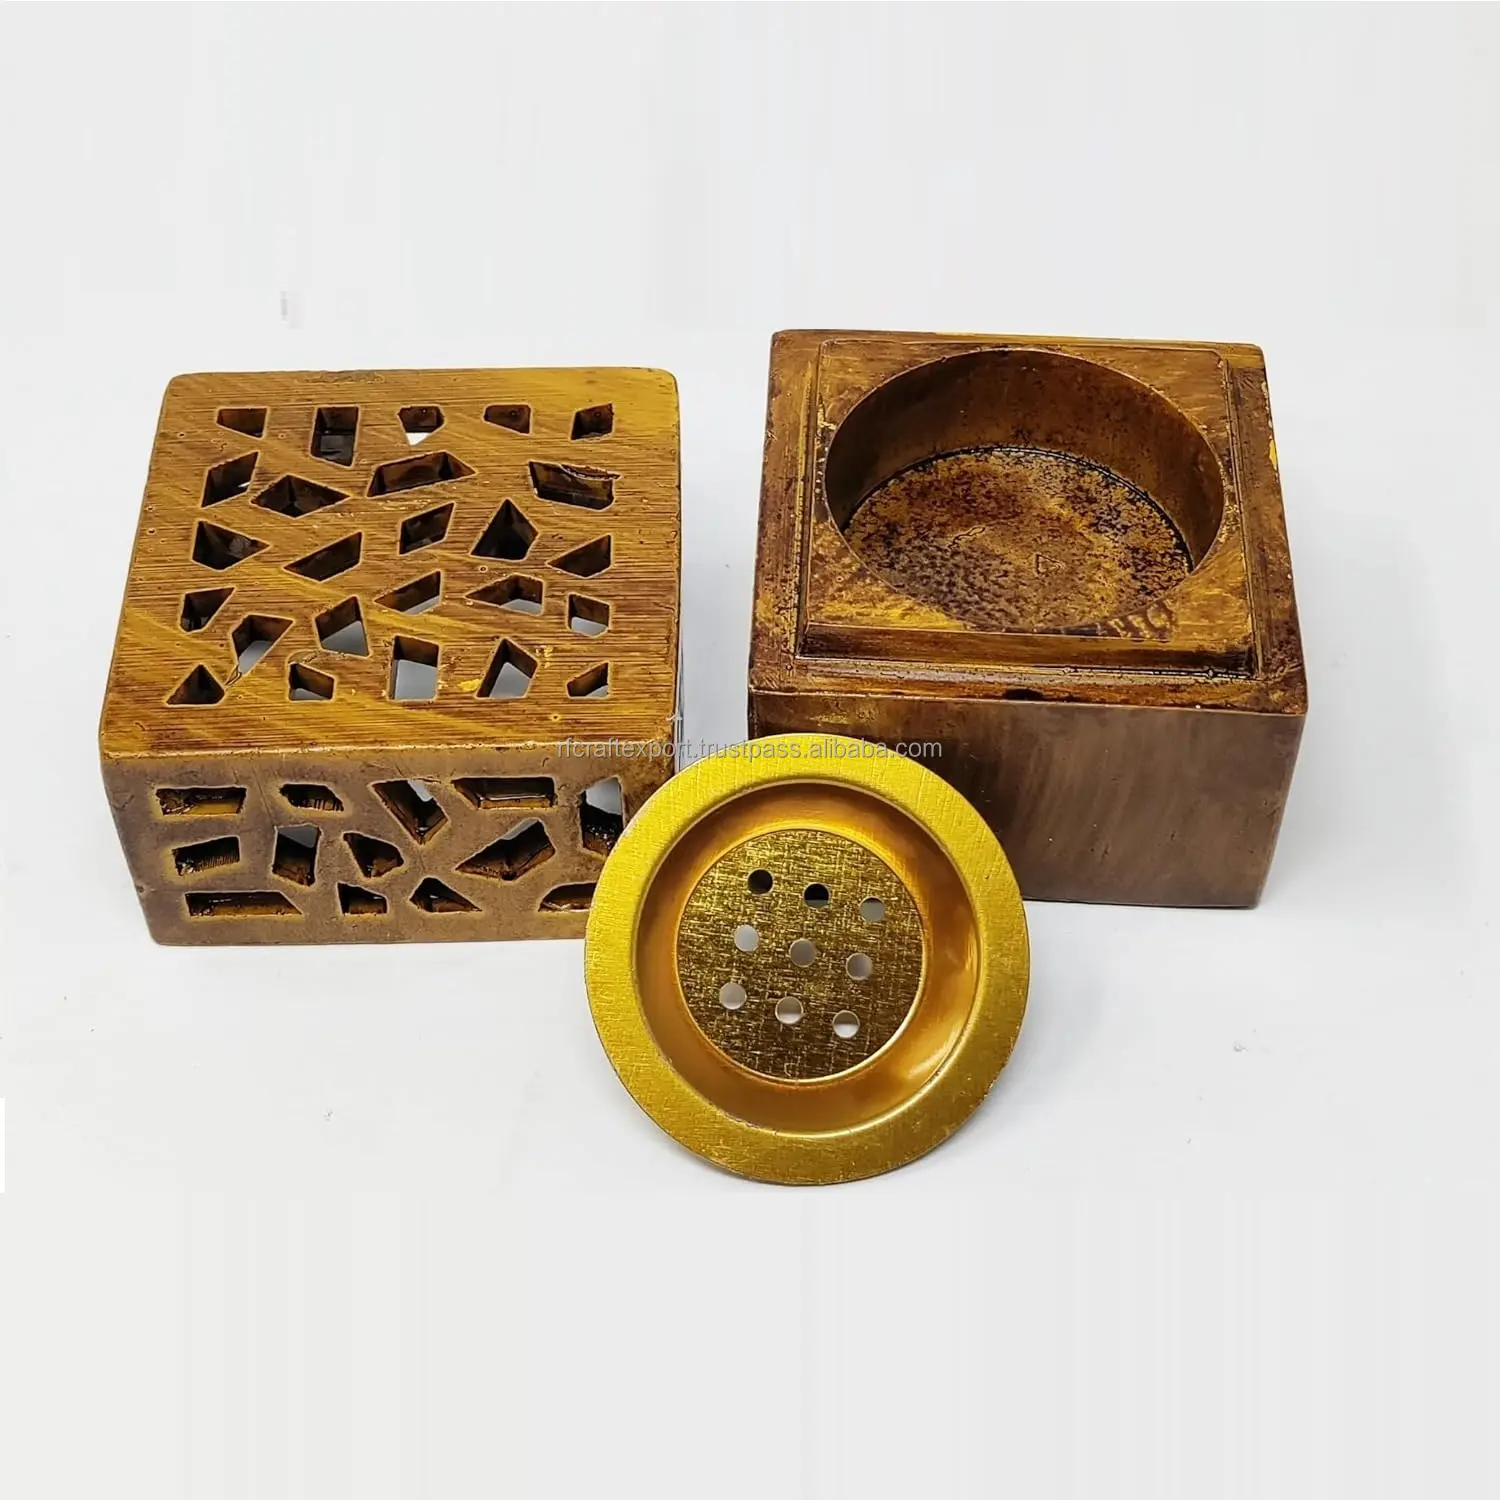 Luxury Middle Eastern Arabian Wooden Incense holder censer Aroma Diffuser Desktop incense Burner by RF Crafts